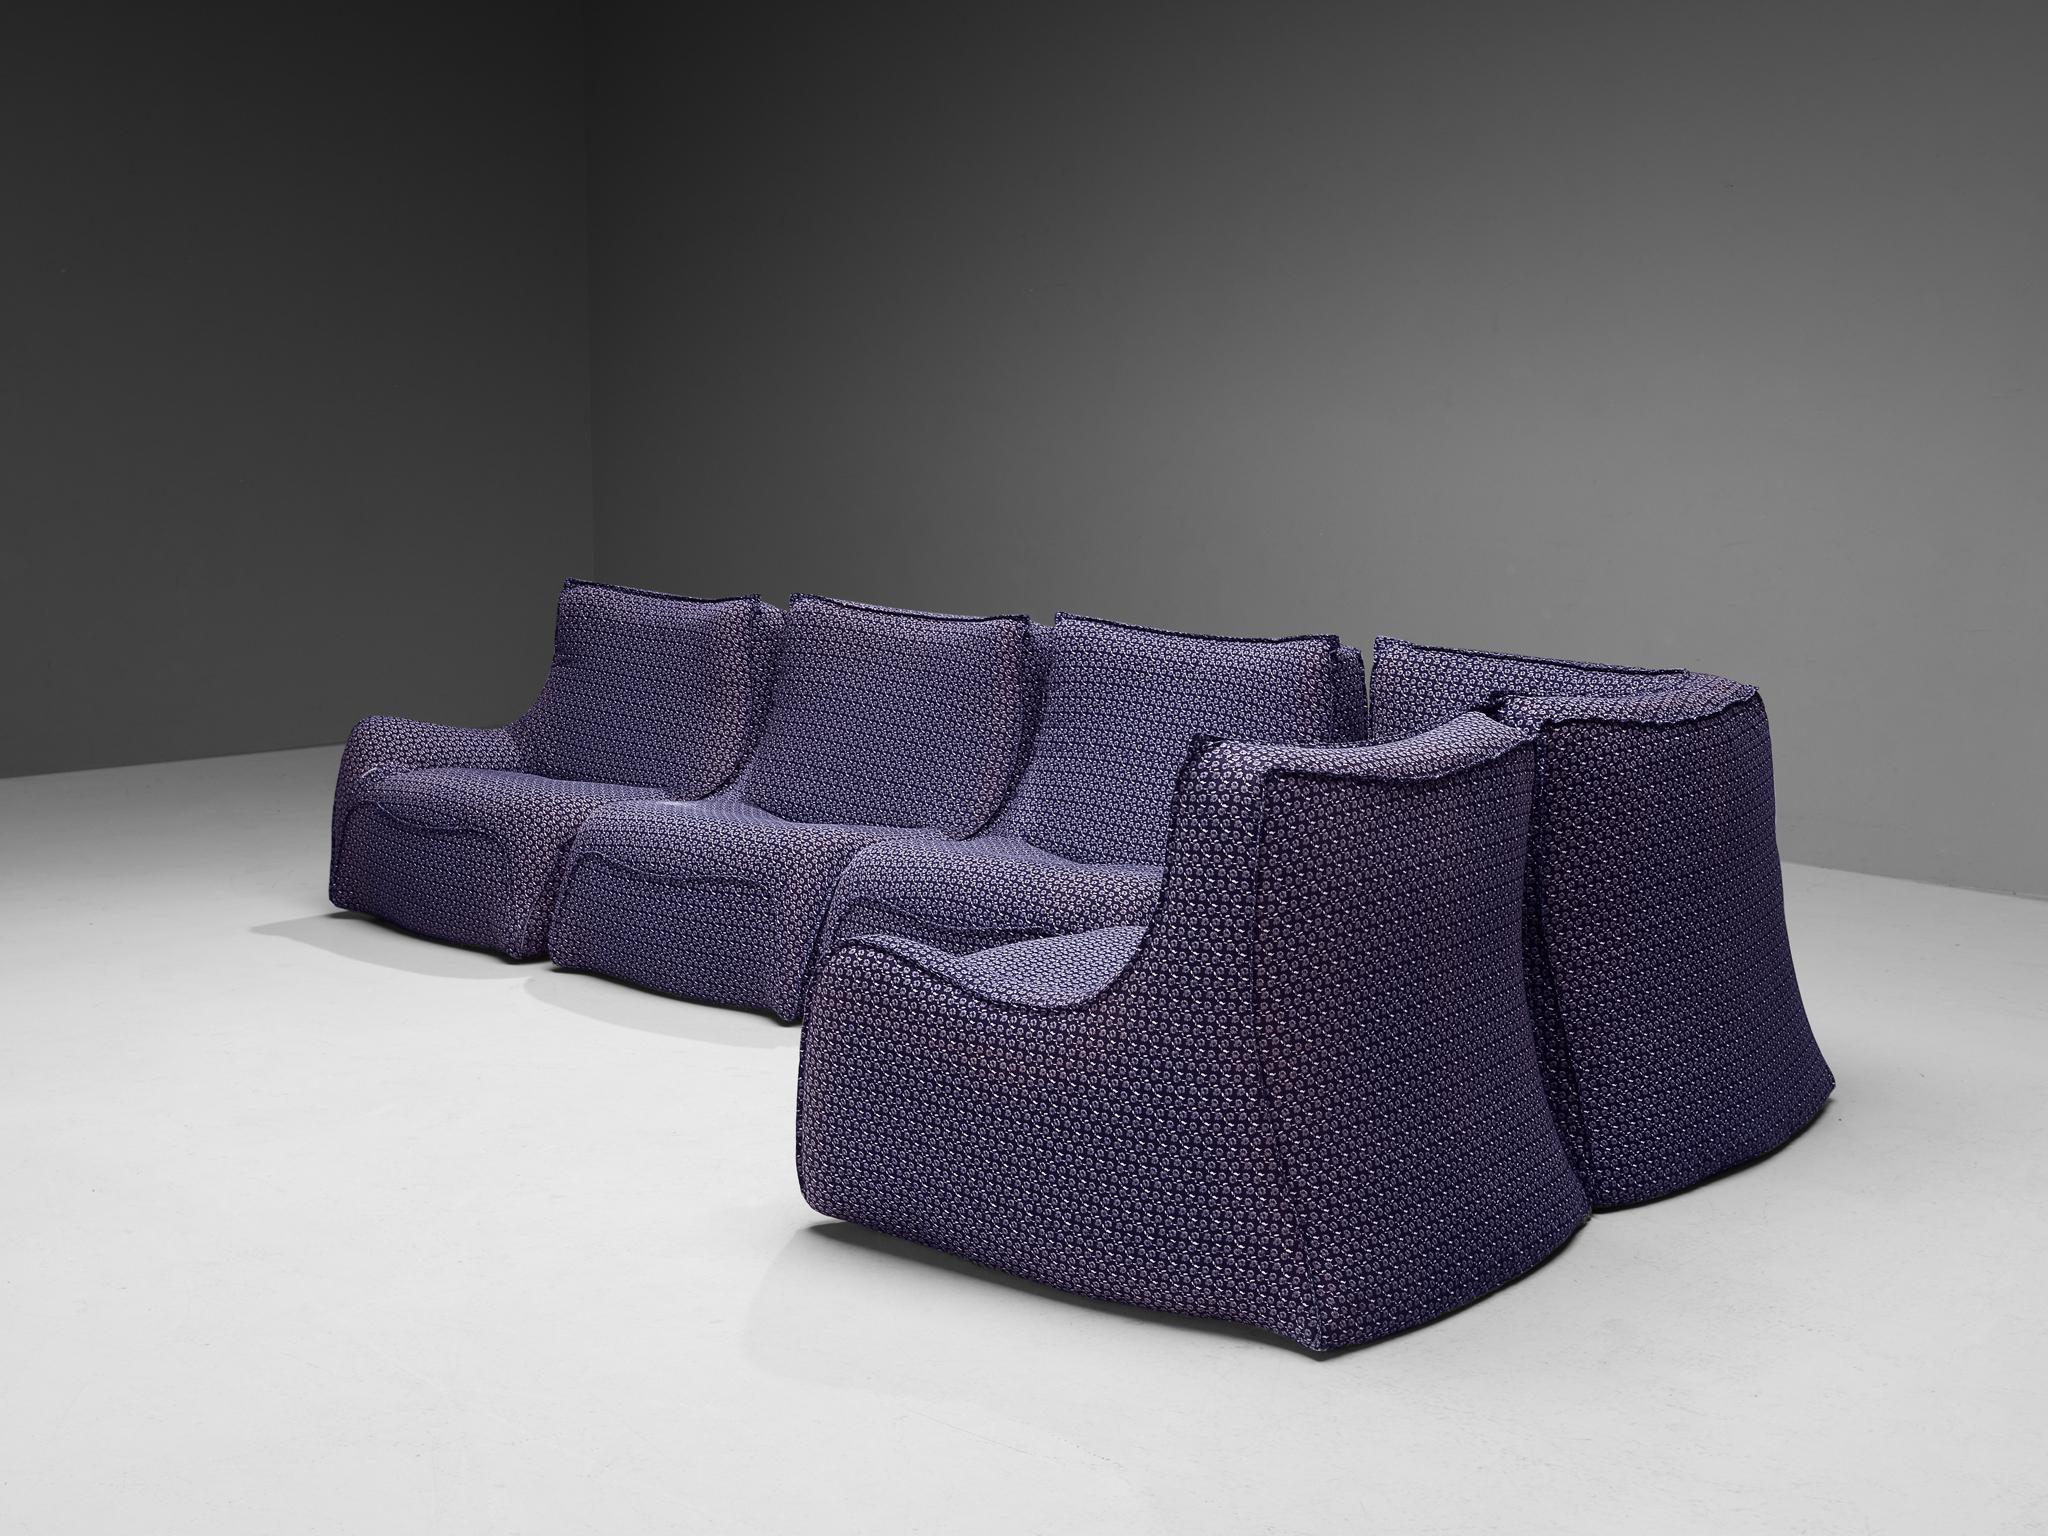 Rare Bernard Govin for Ligne Roset Sectional Sofa in Purple Upholstery For Sale 3